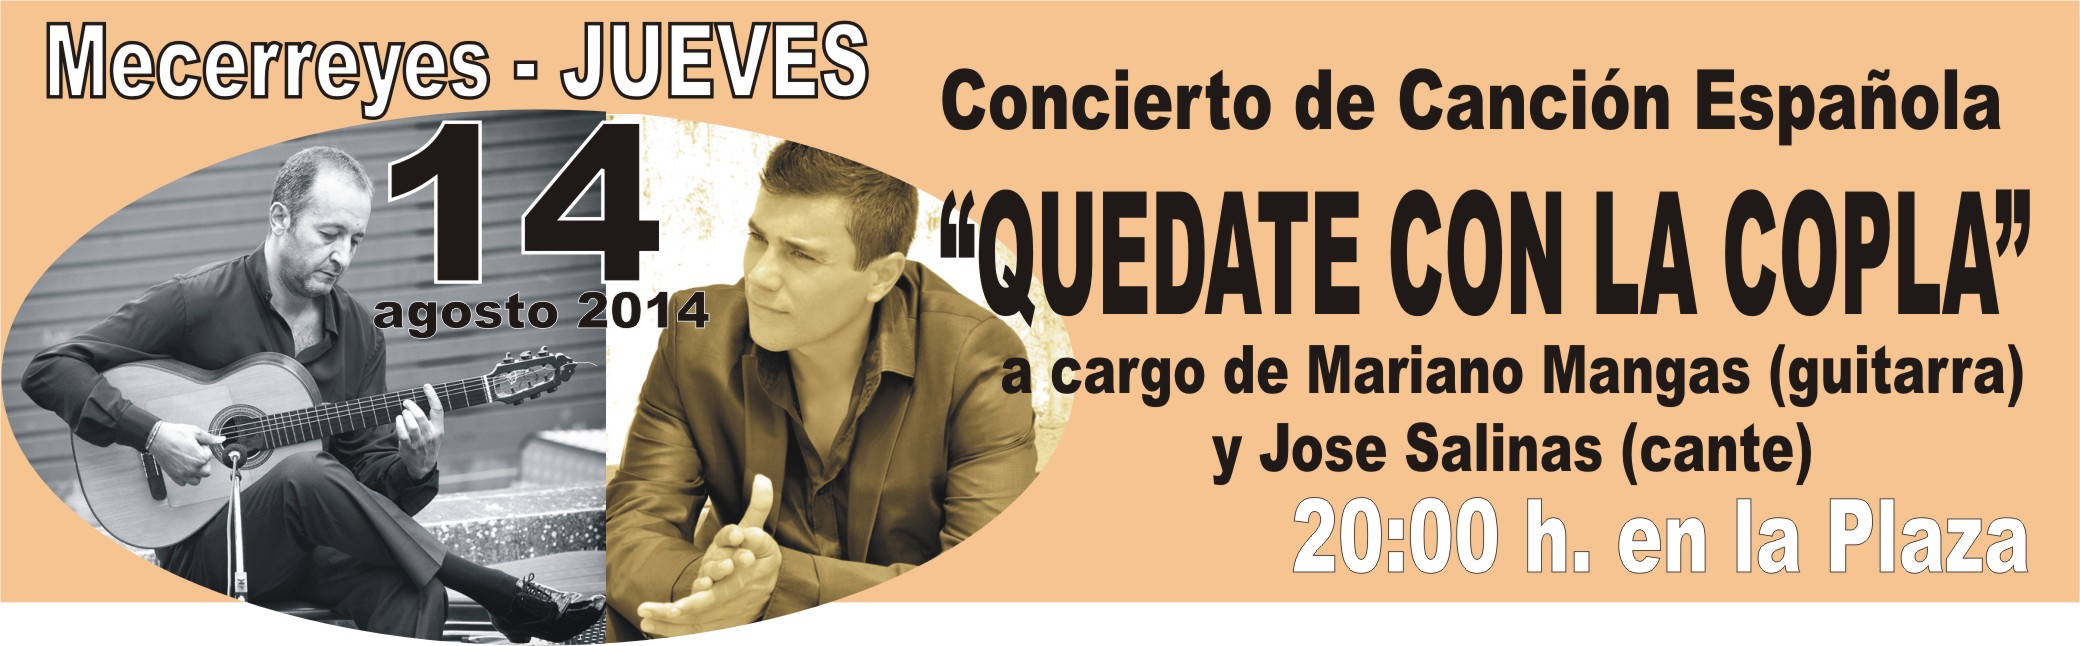 Mecerreyes, Verano Cultural 2014-Mariano Mangas y Jose Salinas